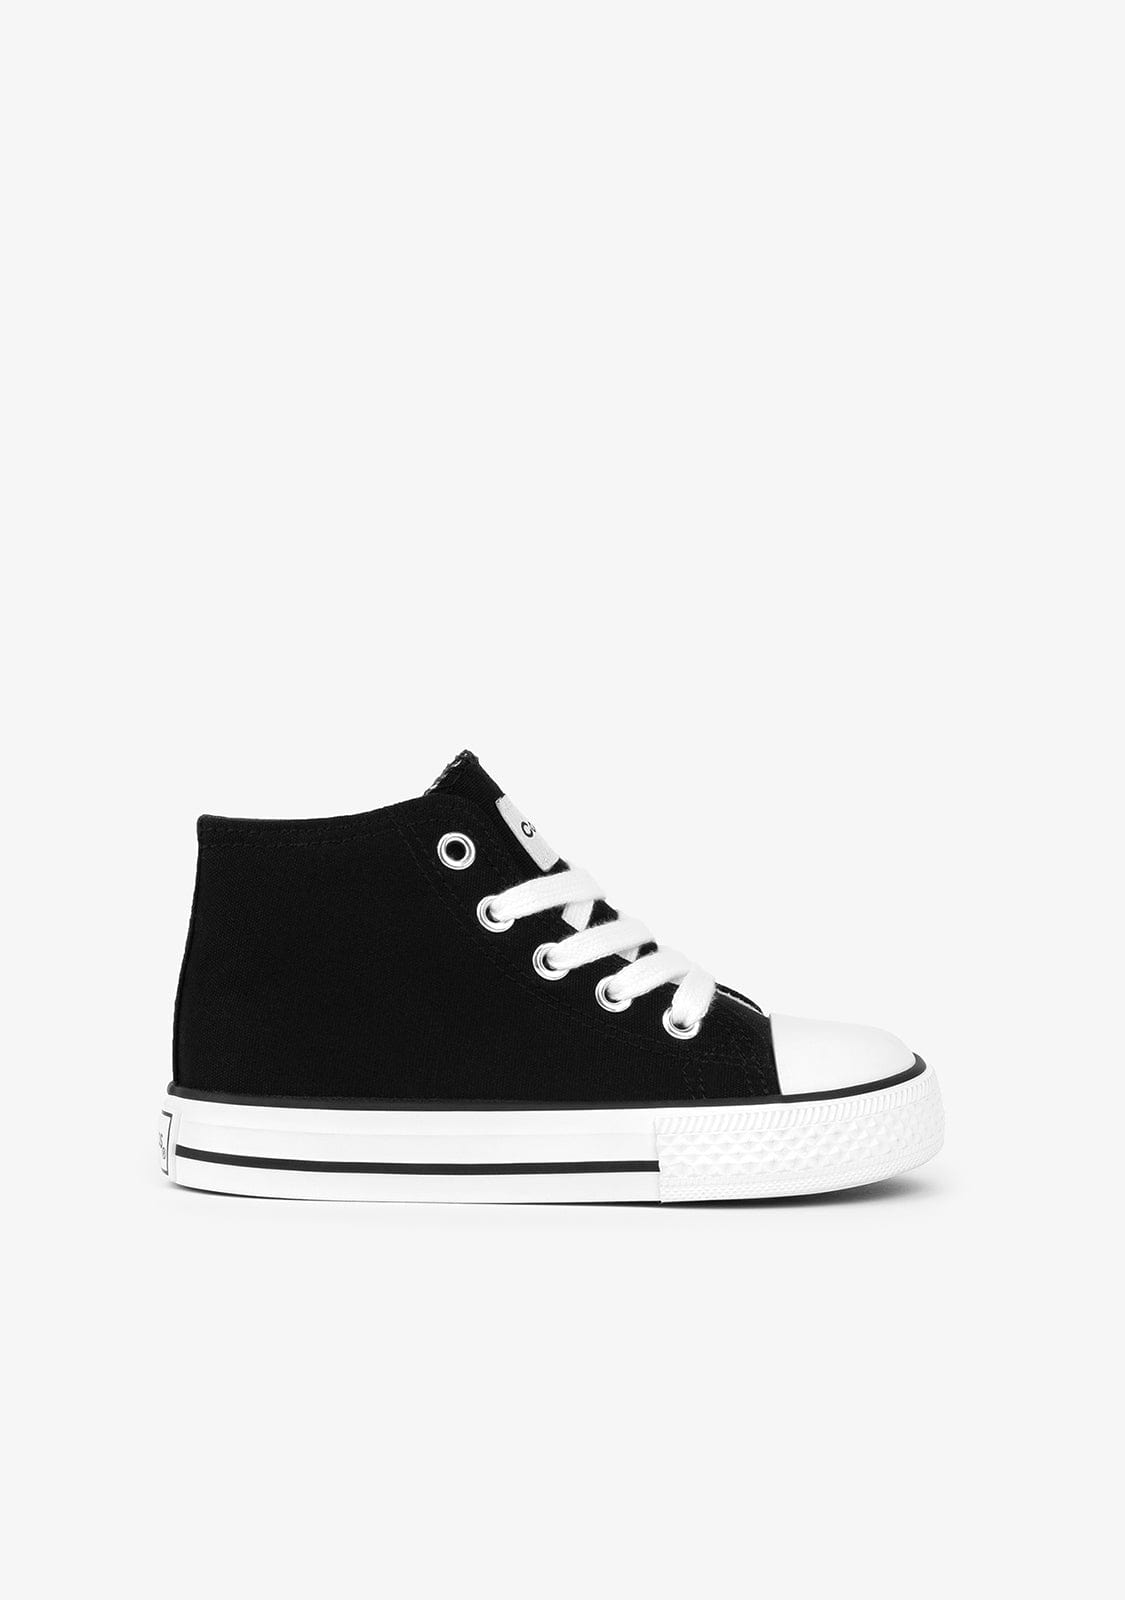 CONGUITOS Shoes Unisex Black Basic Hi-Top Sneakers Canvas